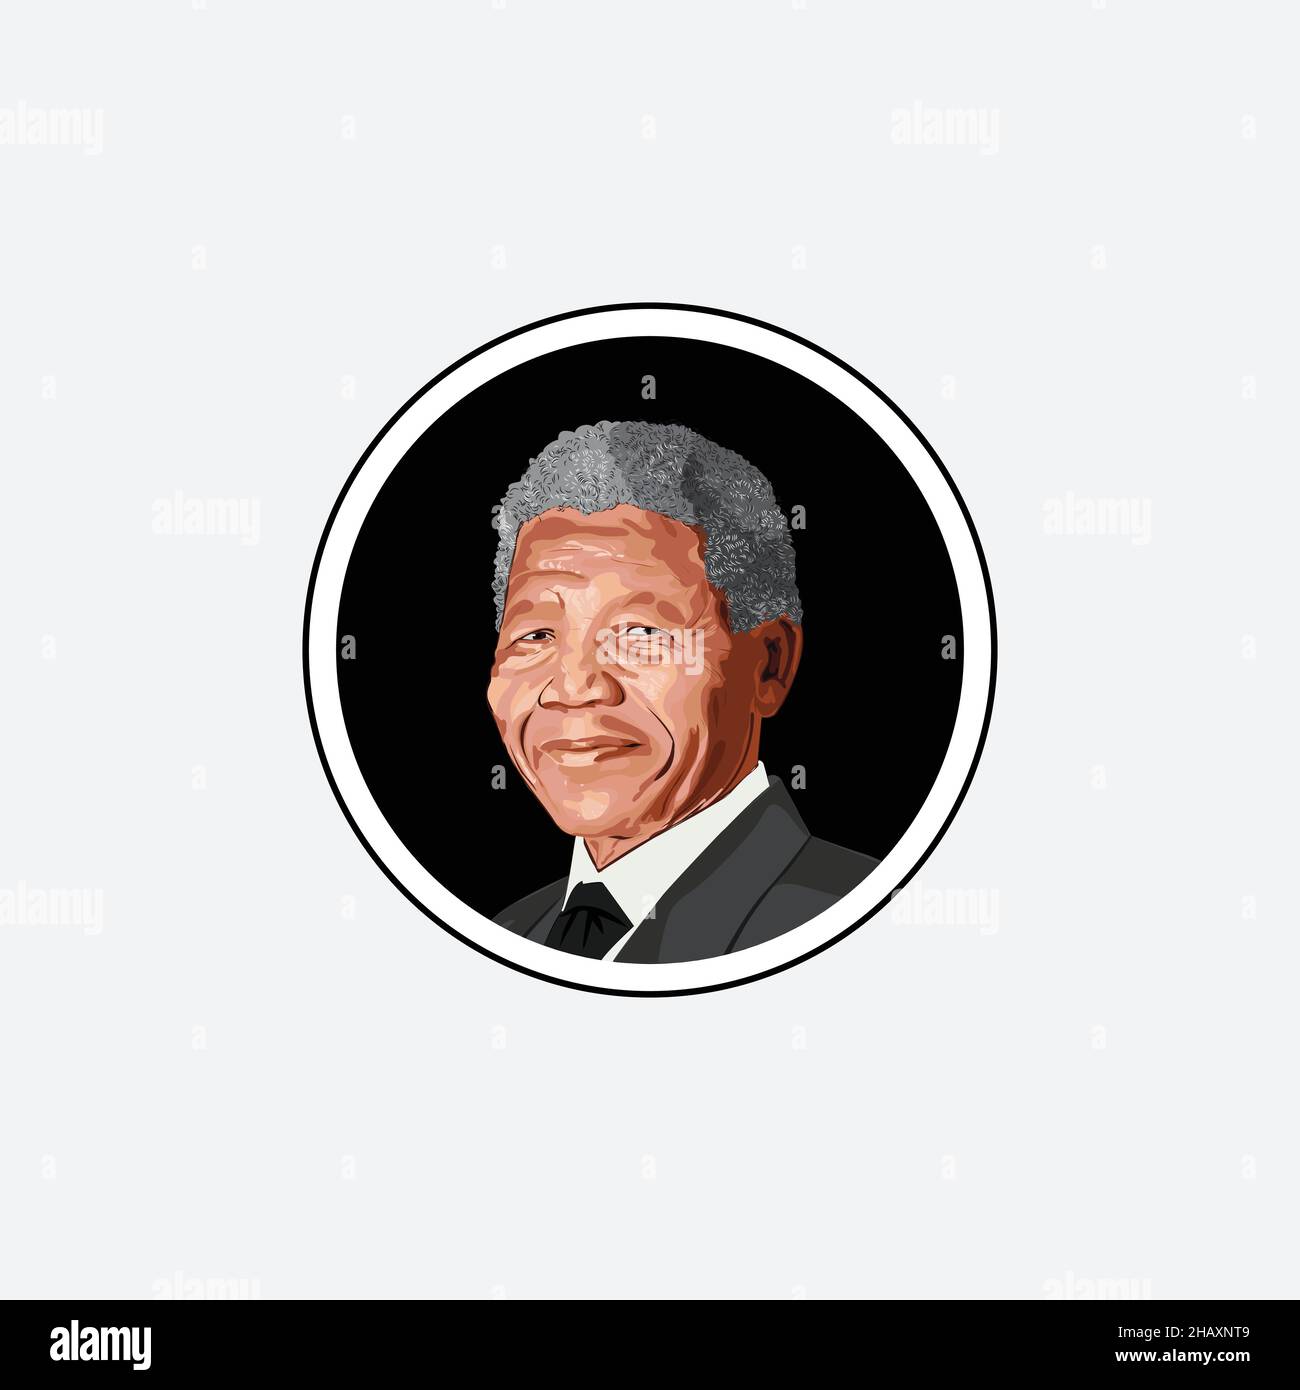 Nelson Mandela è stato un leader politico e rivoluzionario anti-apartheid sudafricano, presidente del Sudafrica dal 1994 al 1999 Illustrazione Vettoriale